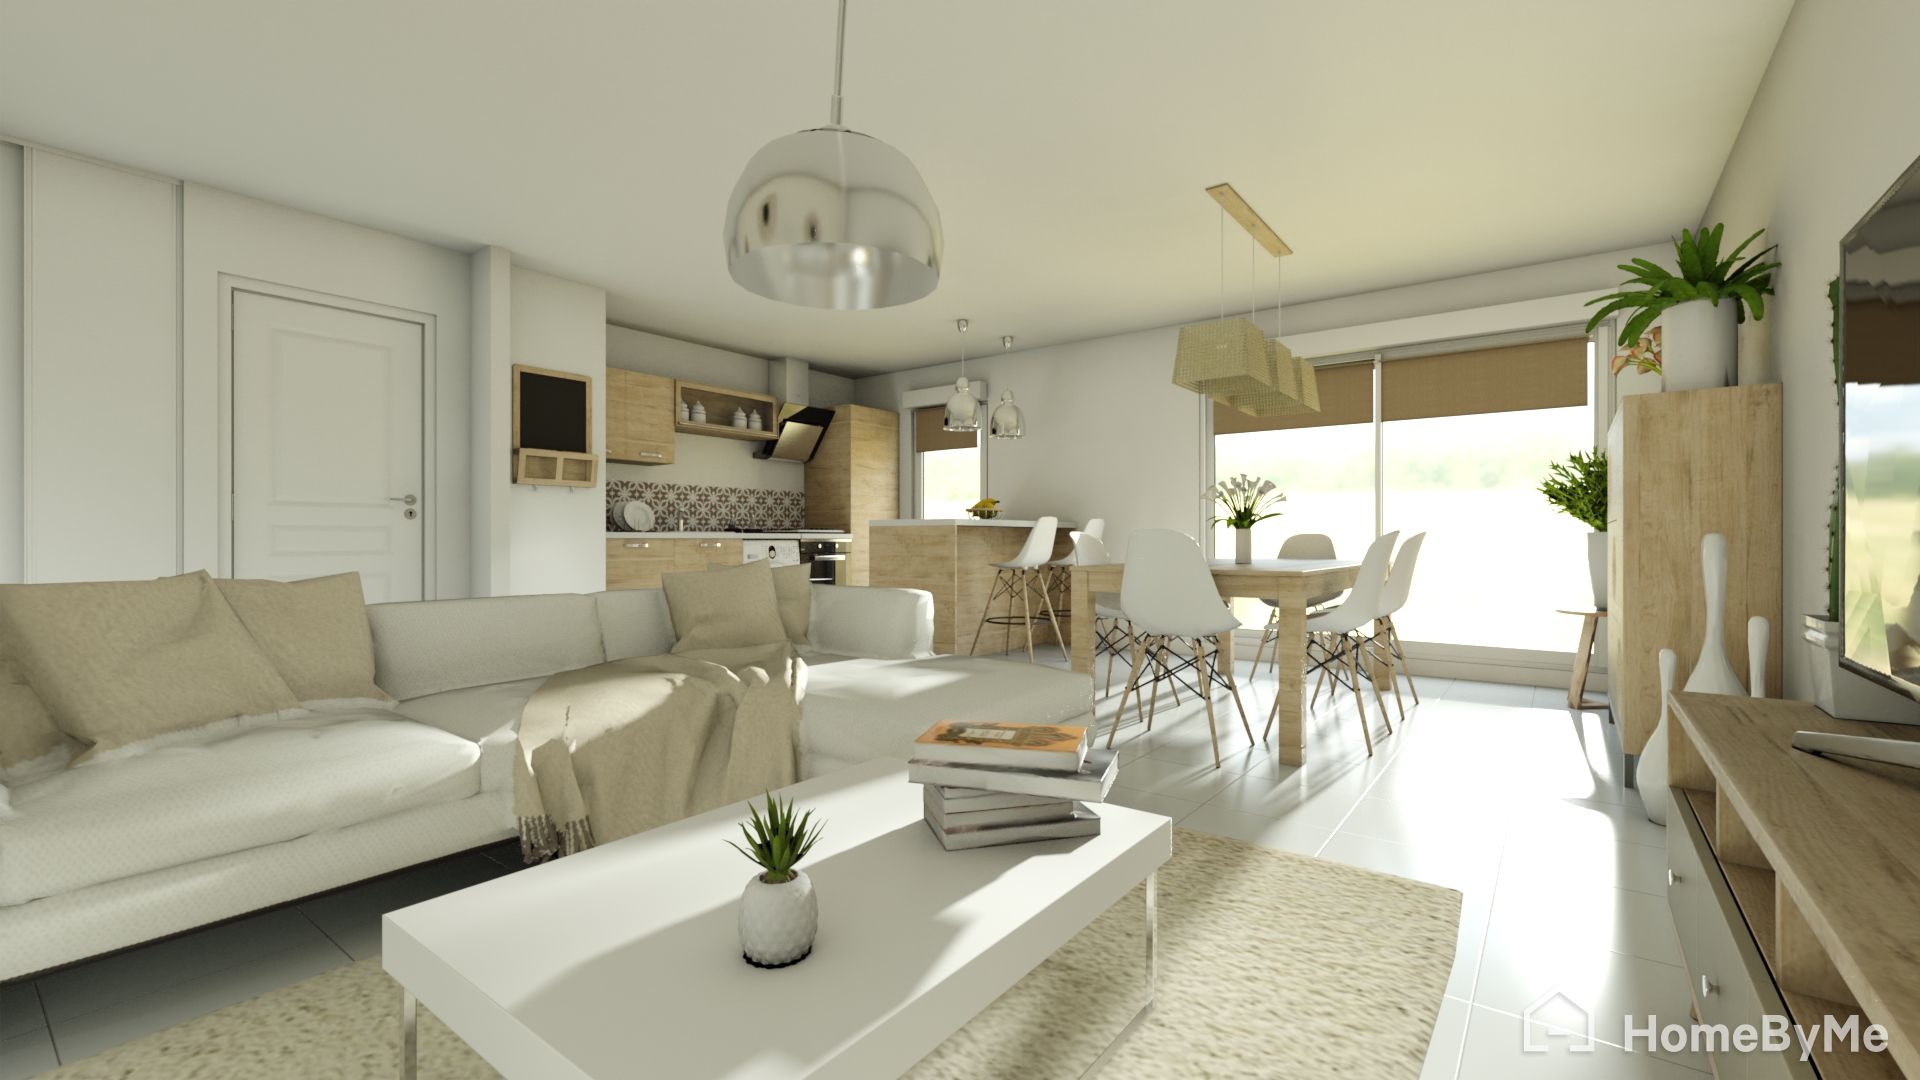 Home decoration: Inspirational Living room ideas - HomeByMe